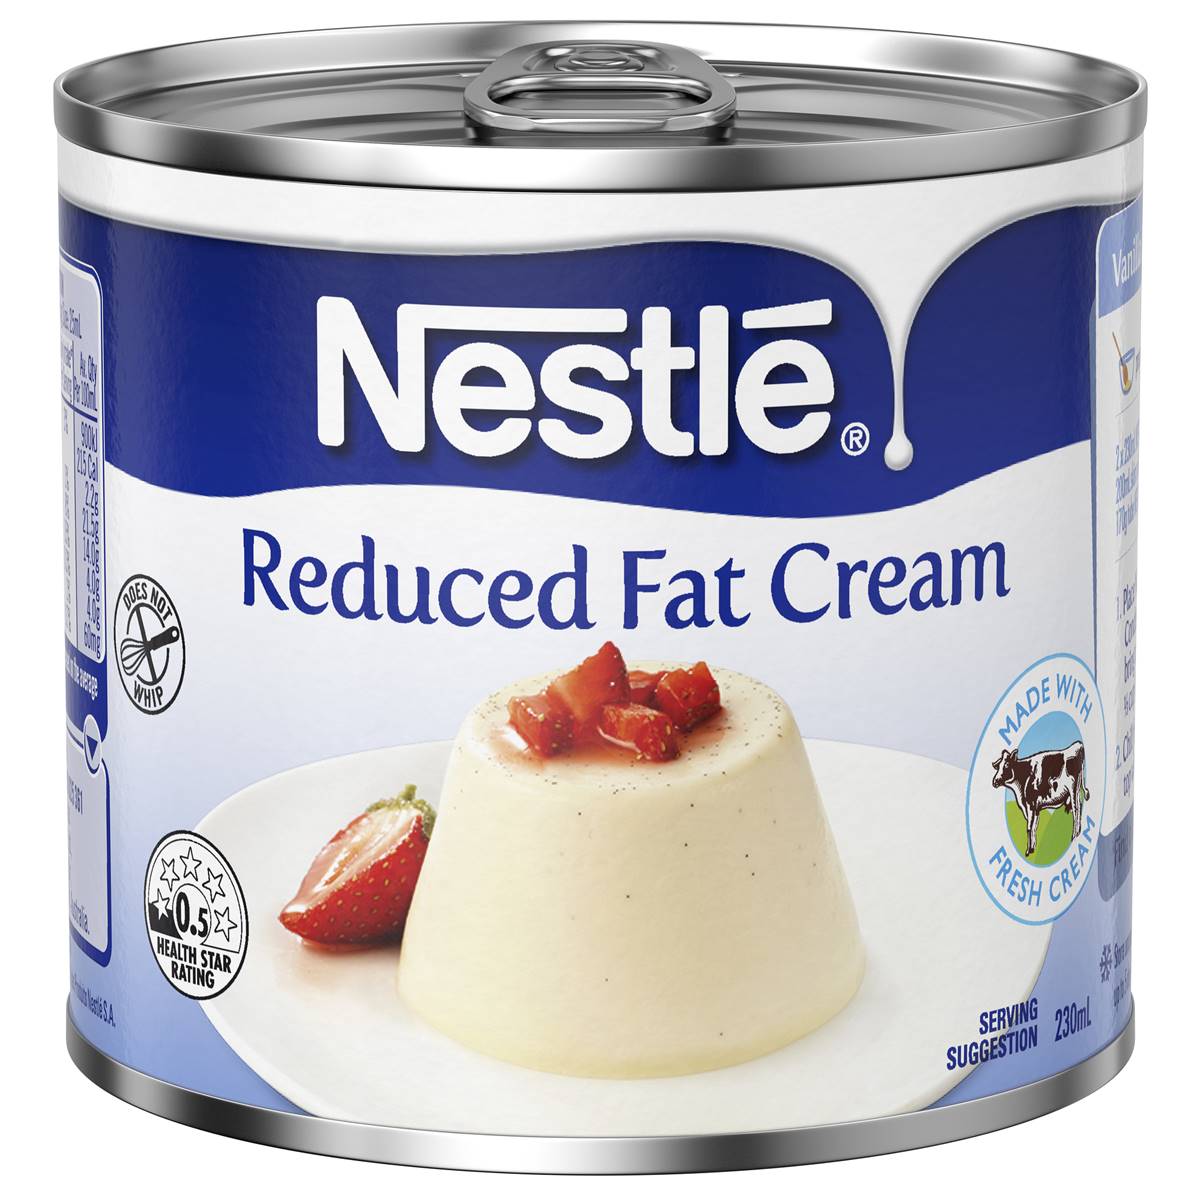 Nestle Reduced Cream 230ml